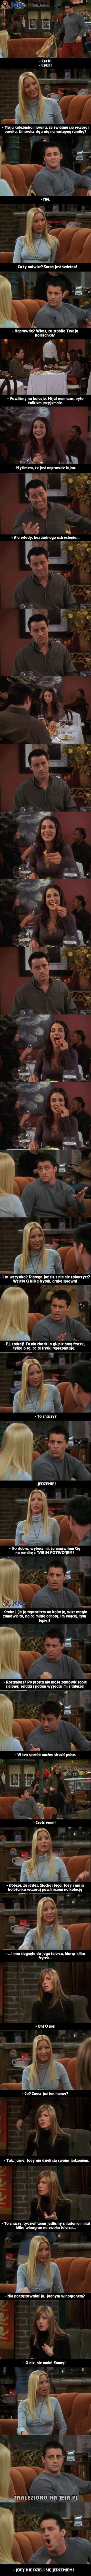 Joey nie dzieli się jedzeniem!